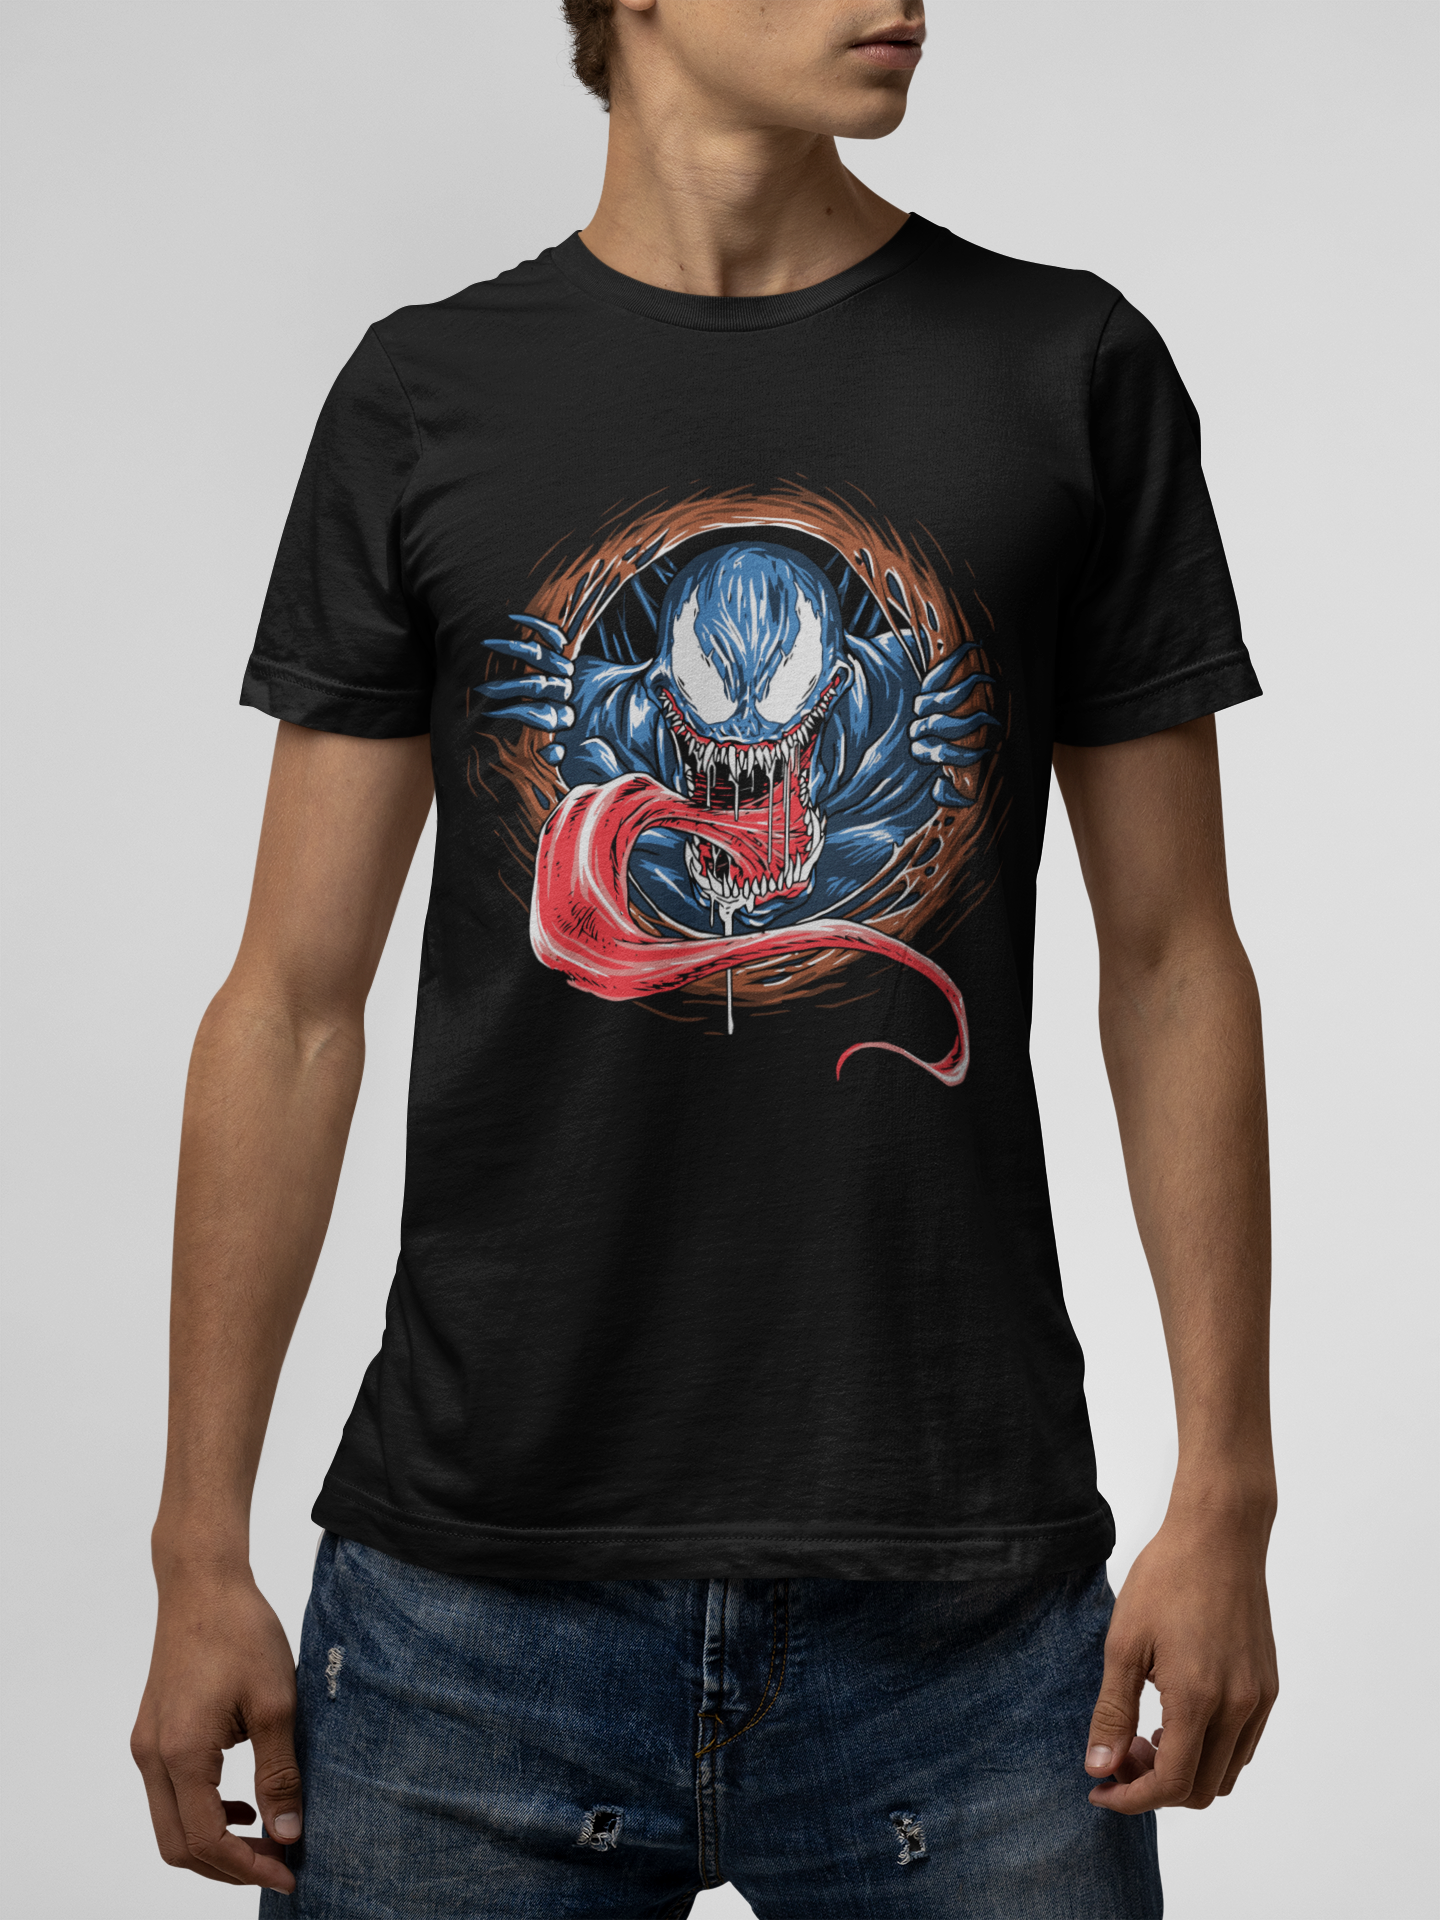 Venom Black T-Shirt For Men